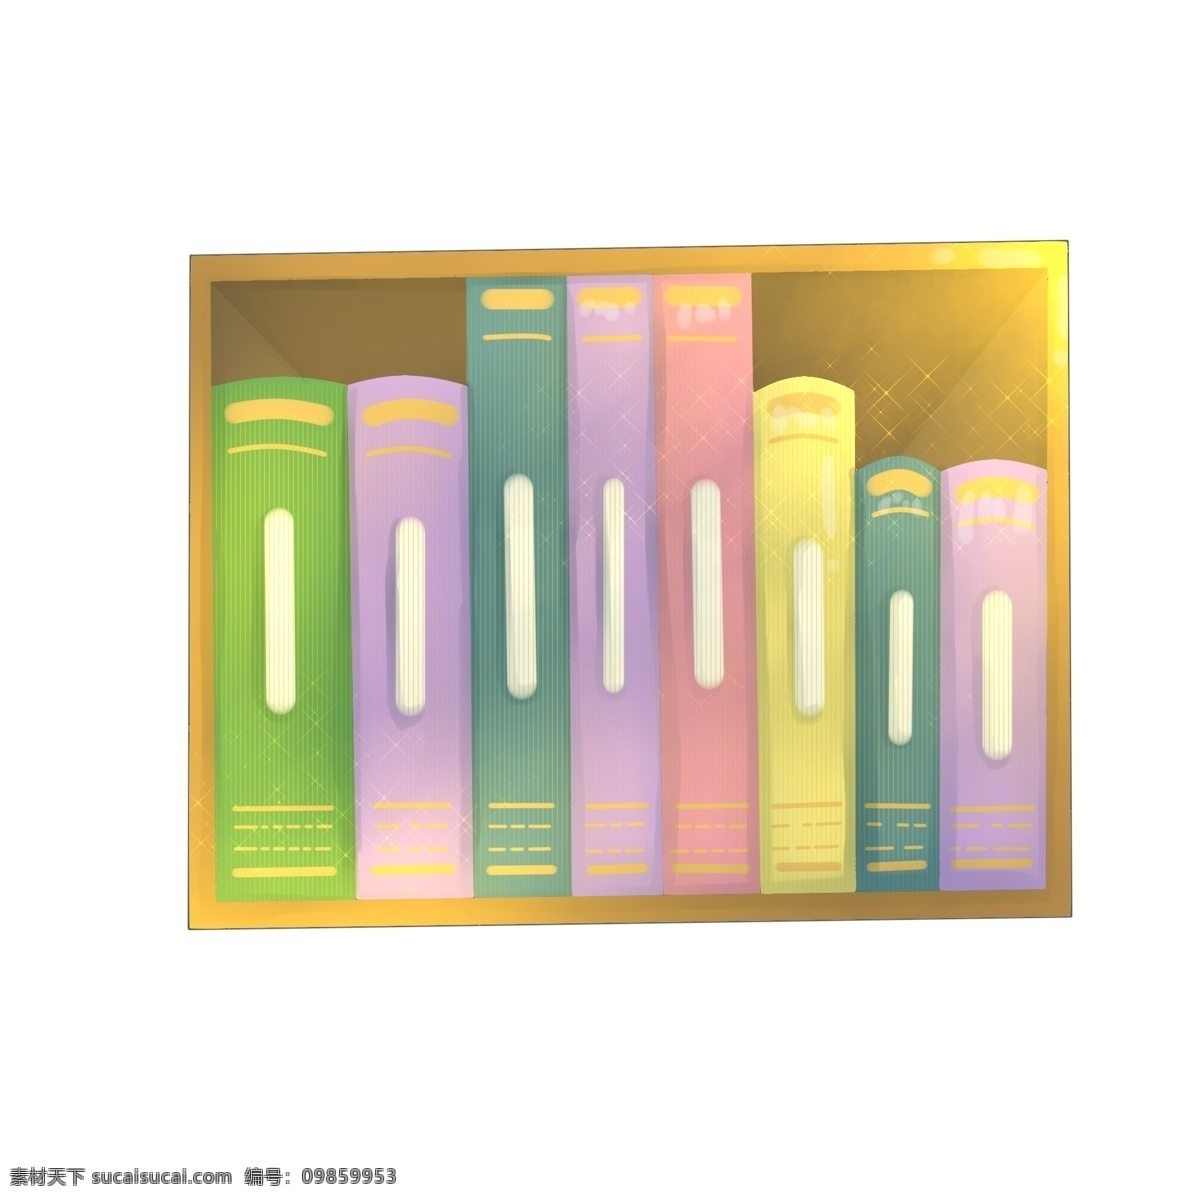 木质 书架 书籍 插画 办公室书架 木质的书架 桌上书架 精美的书架 彩色文件夹 档案管理